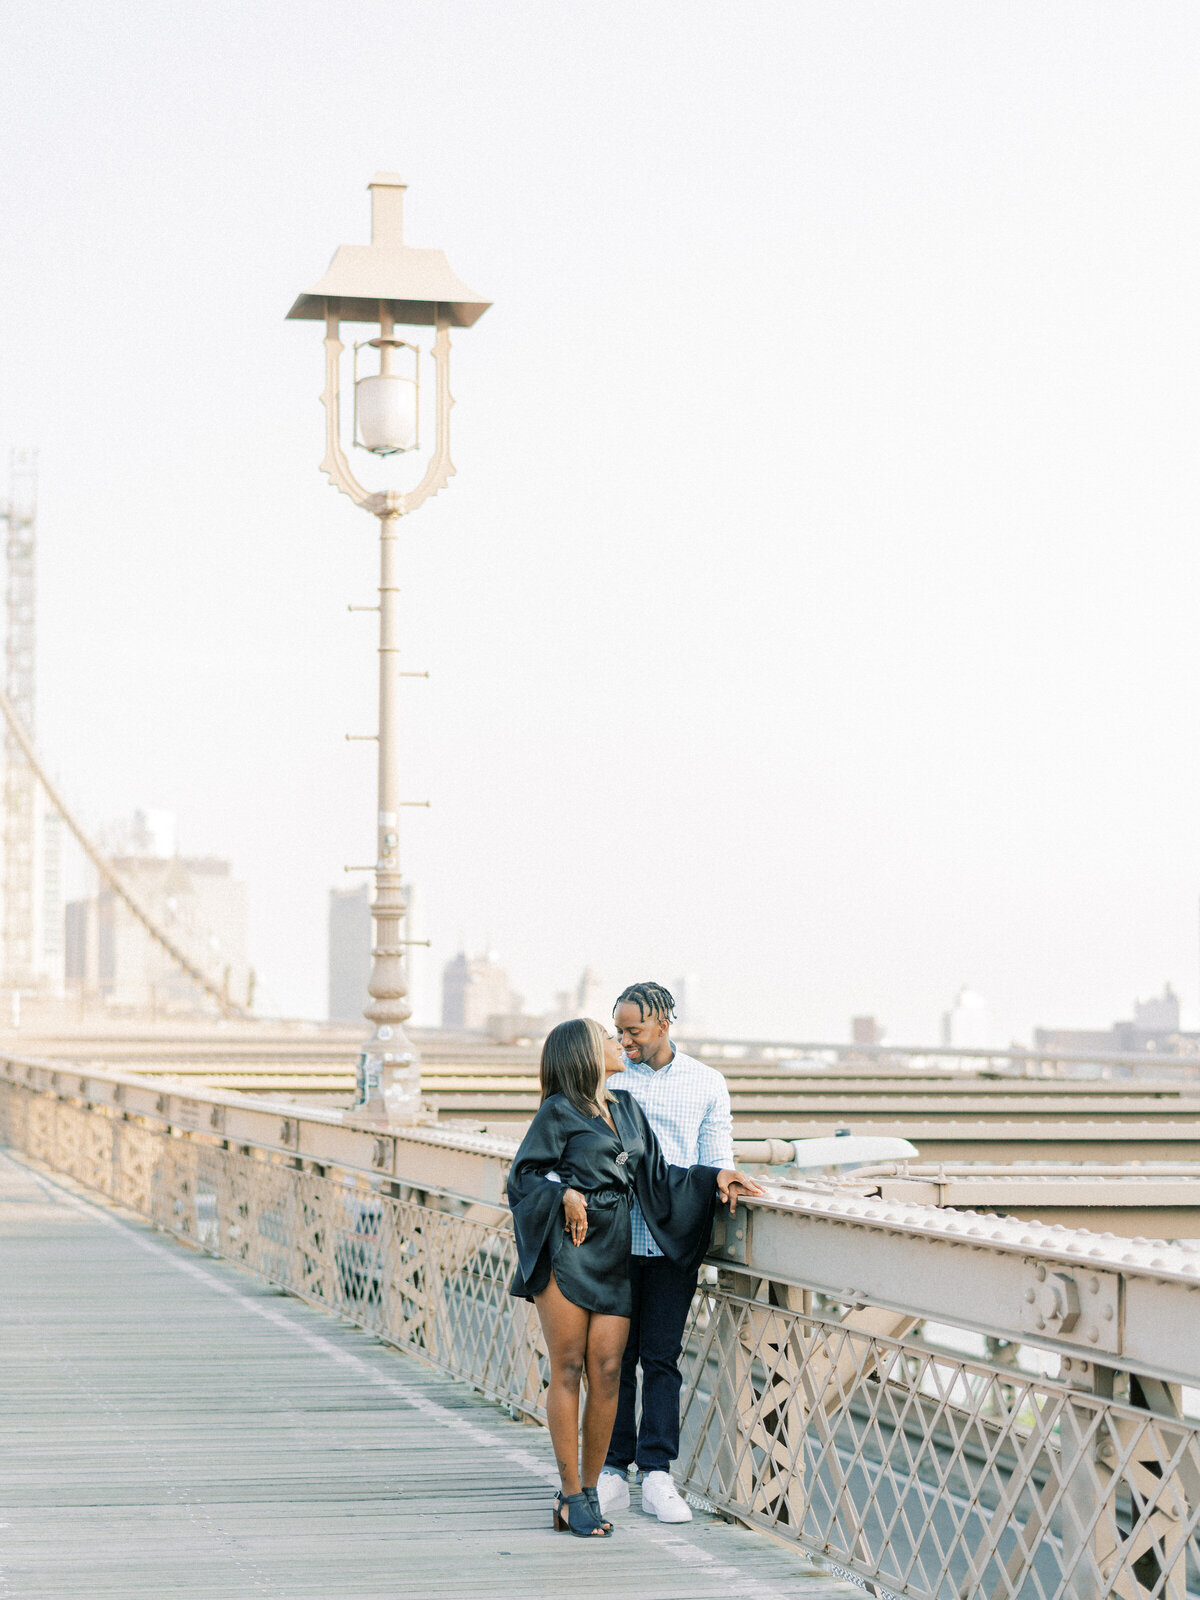 Brooklyn Bridge and DUMBO Sunrise, Engagement Session | Amarachi Ikeji Photography 31